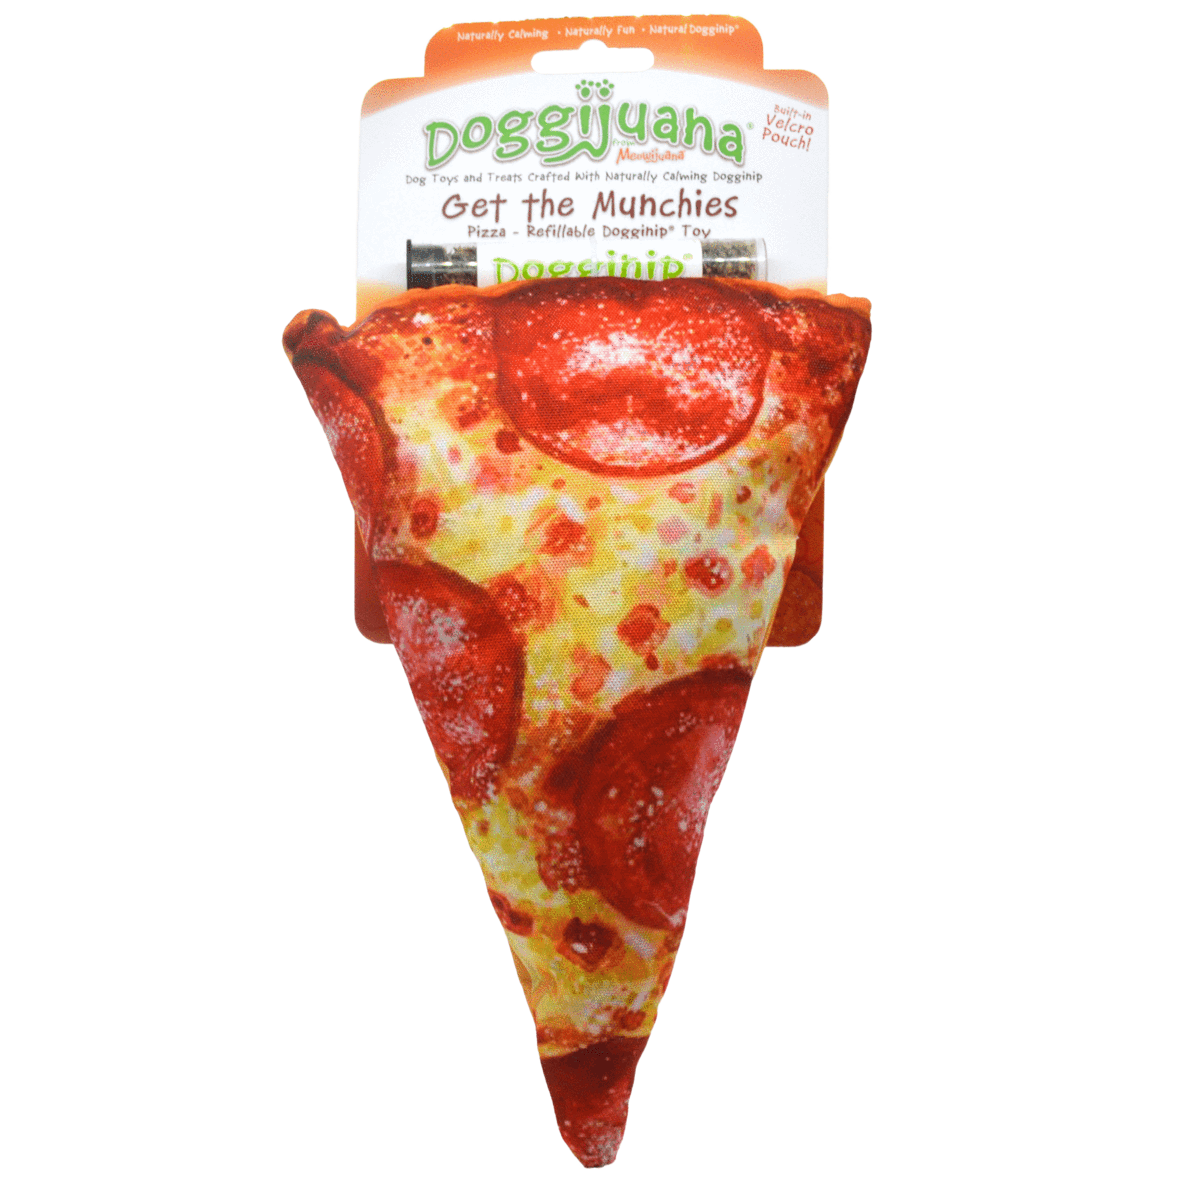 Doggijuana Munchies Toys Pizza Image